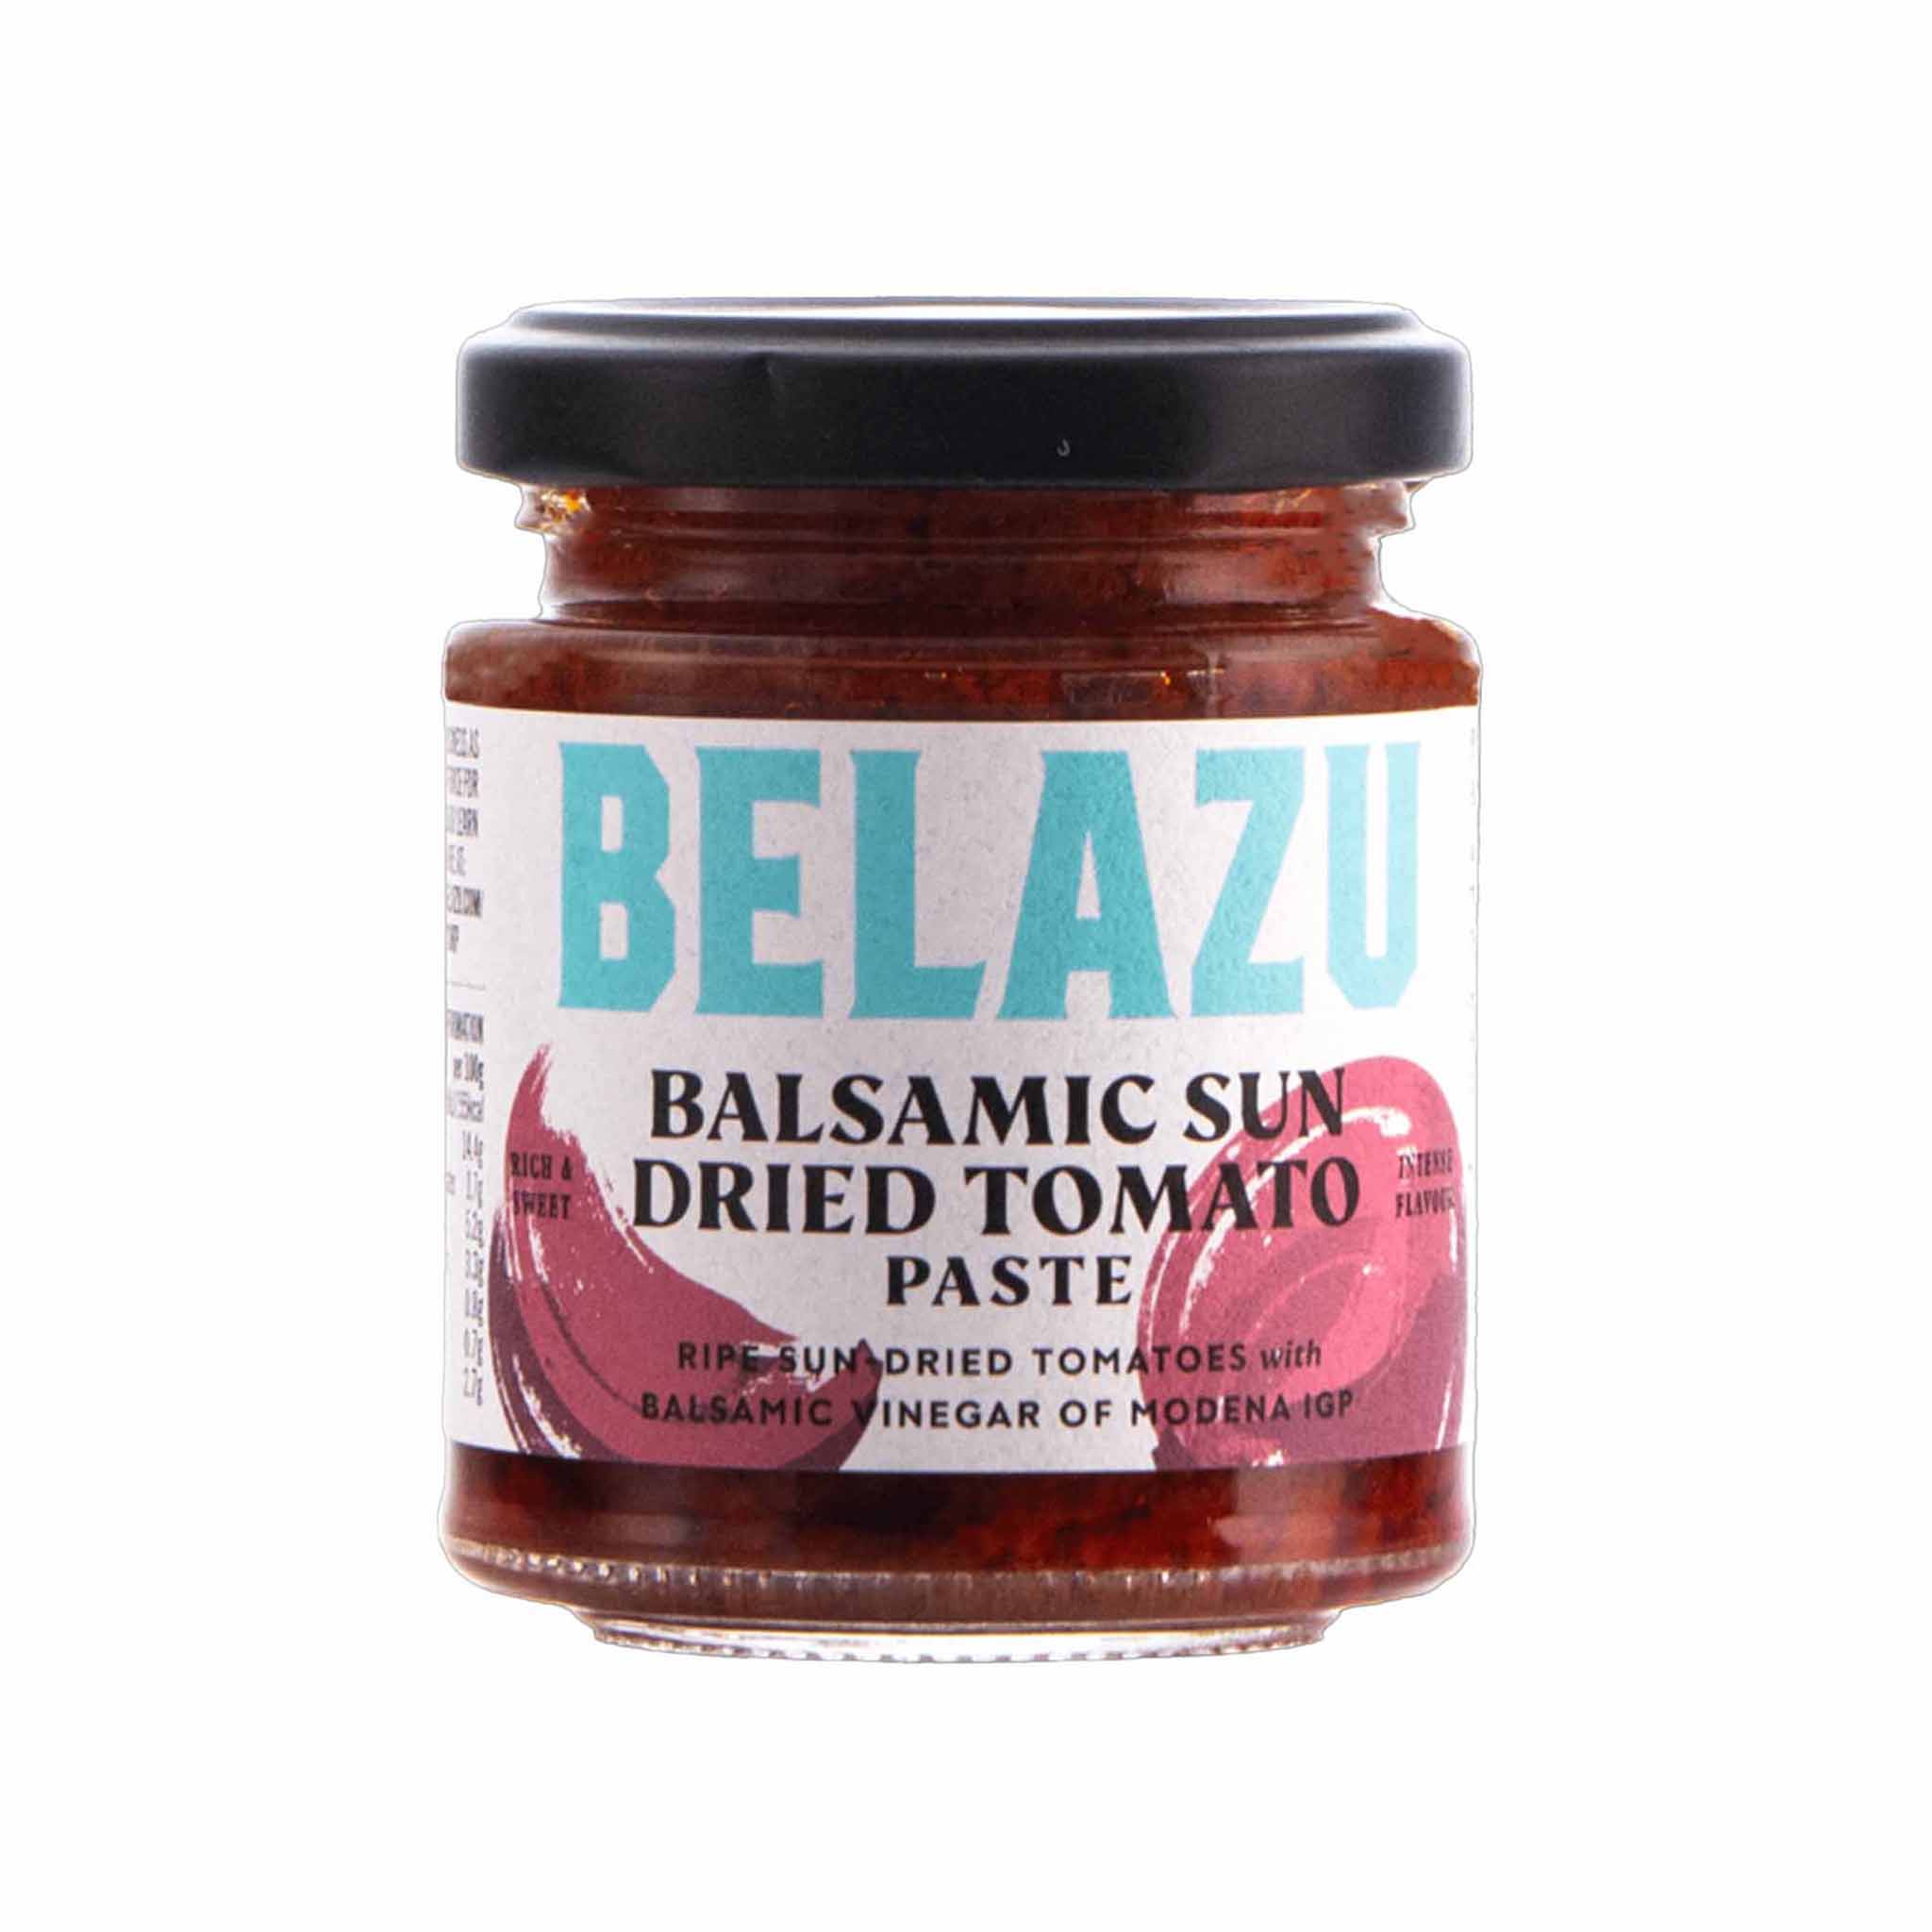 Belazu Balsamic Sun Dried Tomato Paste in a Glass Jar